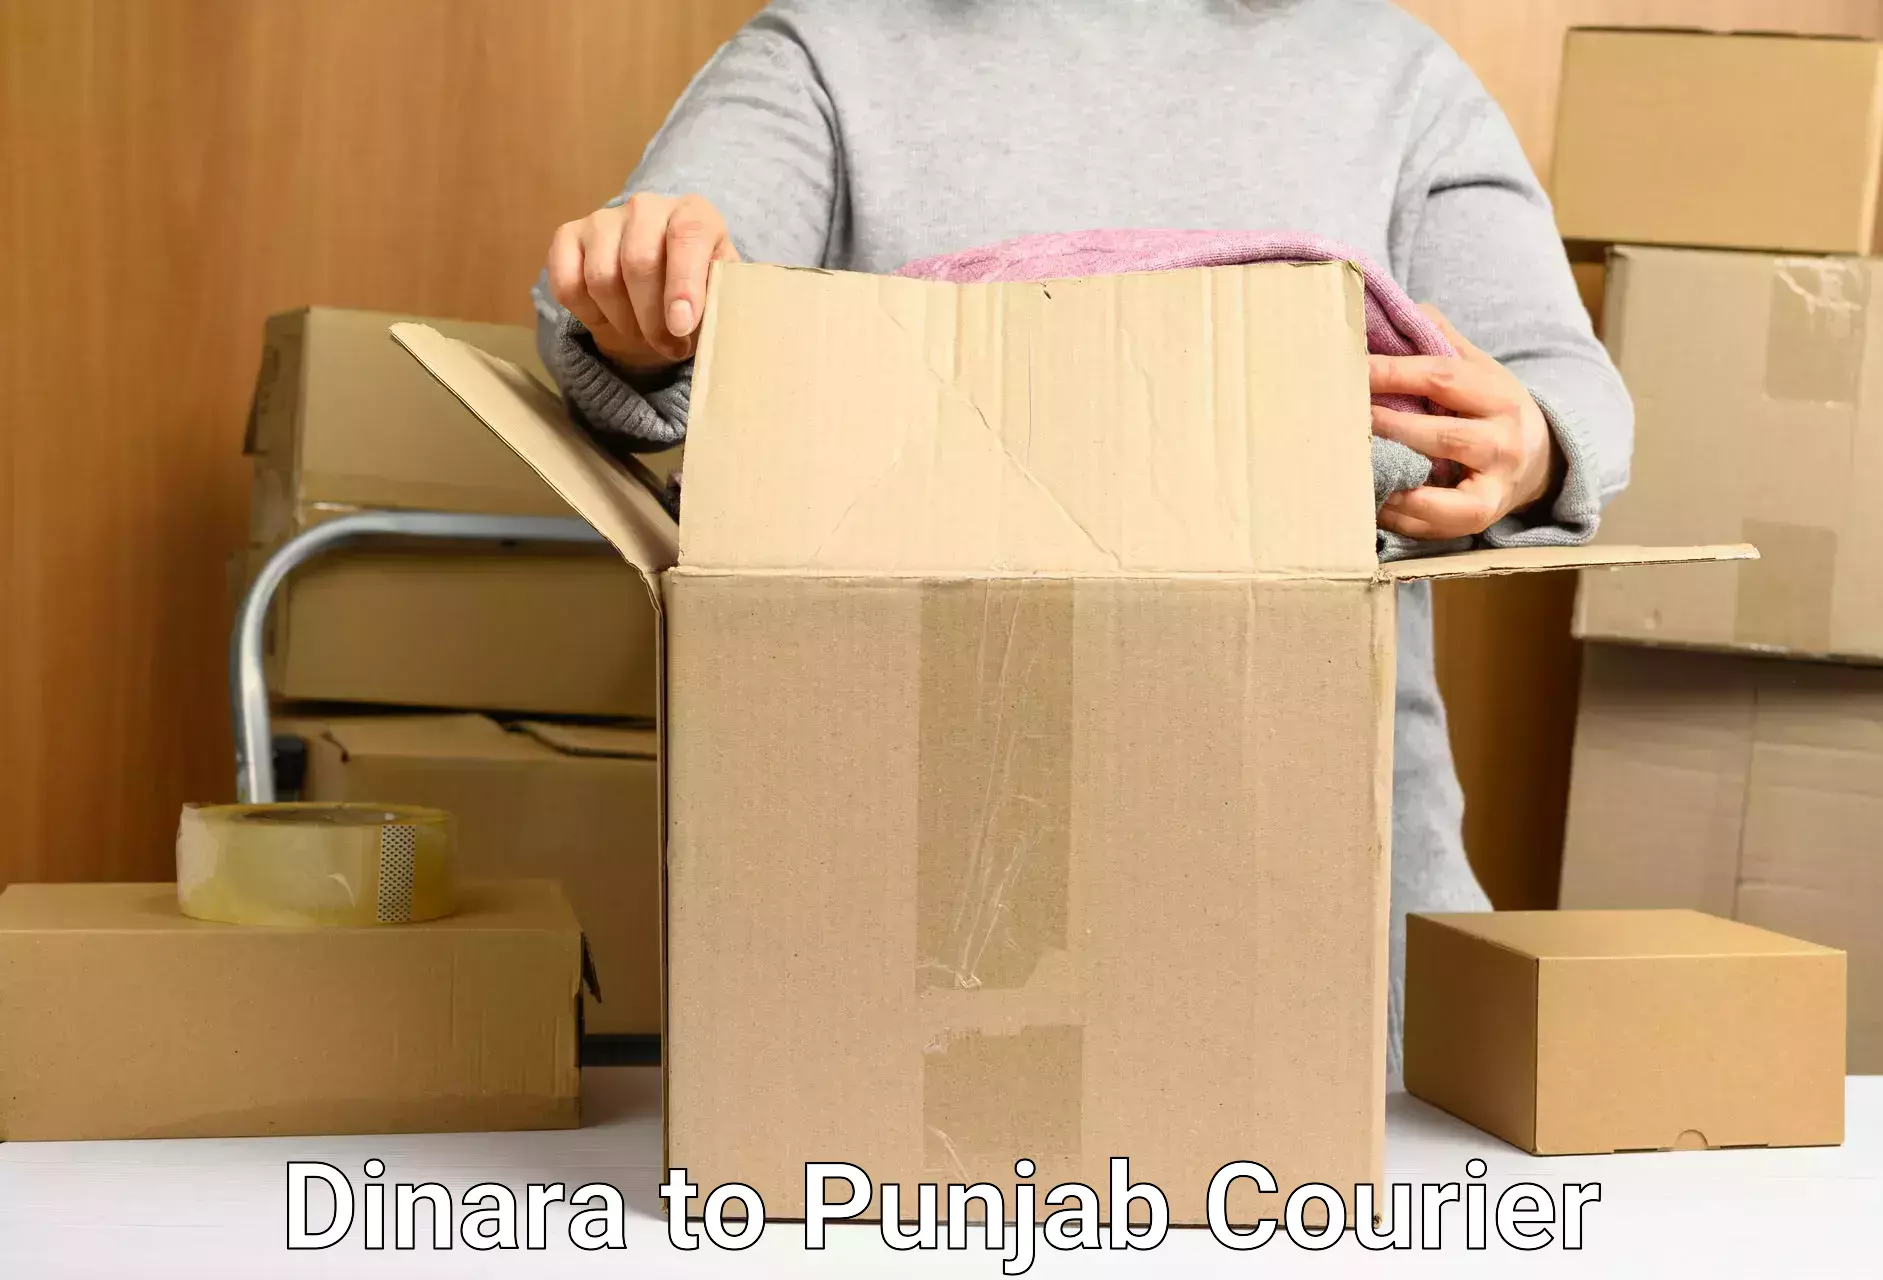 Quick parcel dispatch Dinara to Punjab